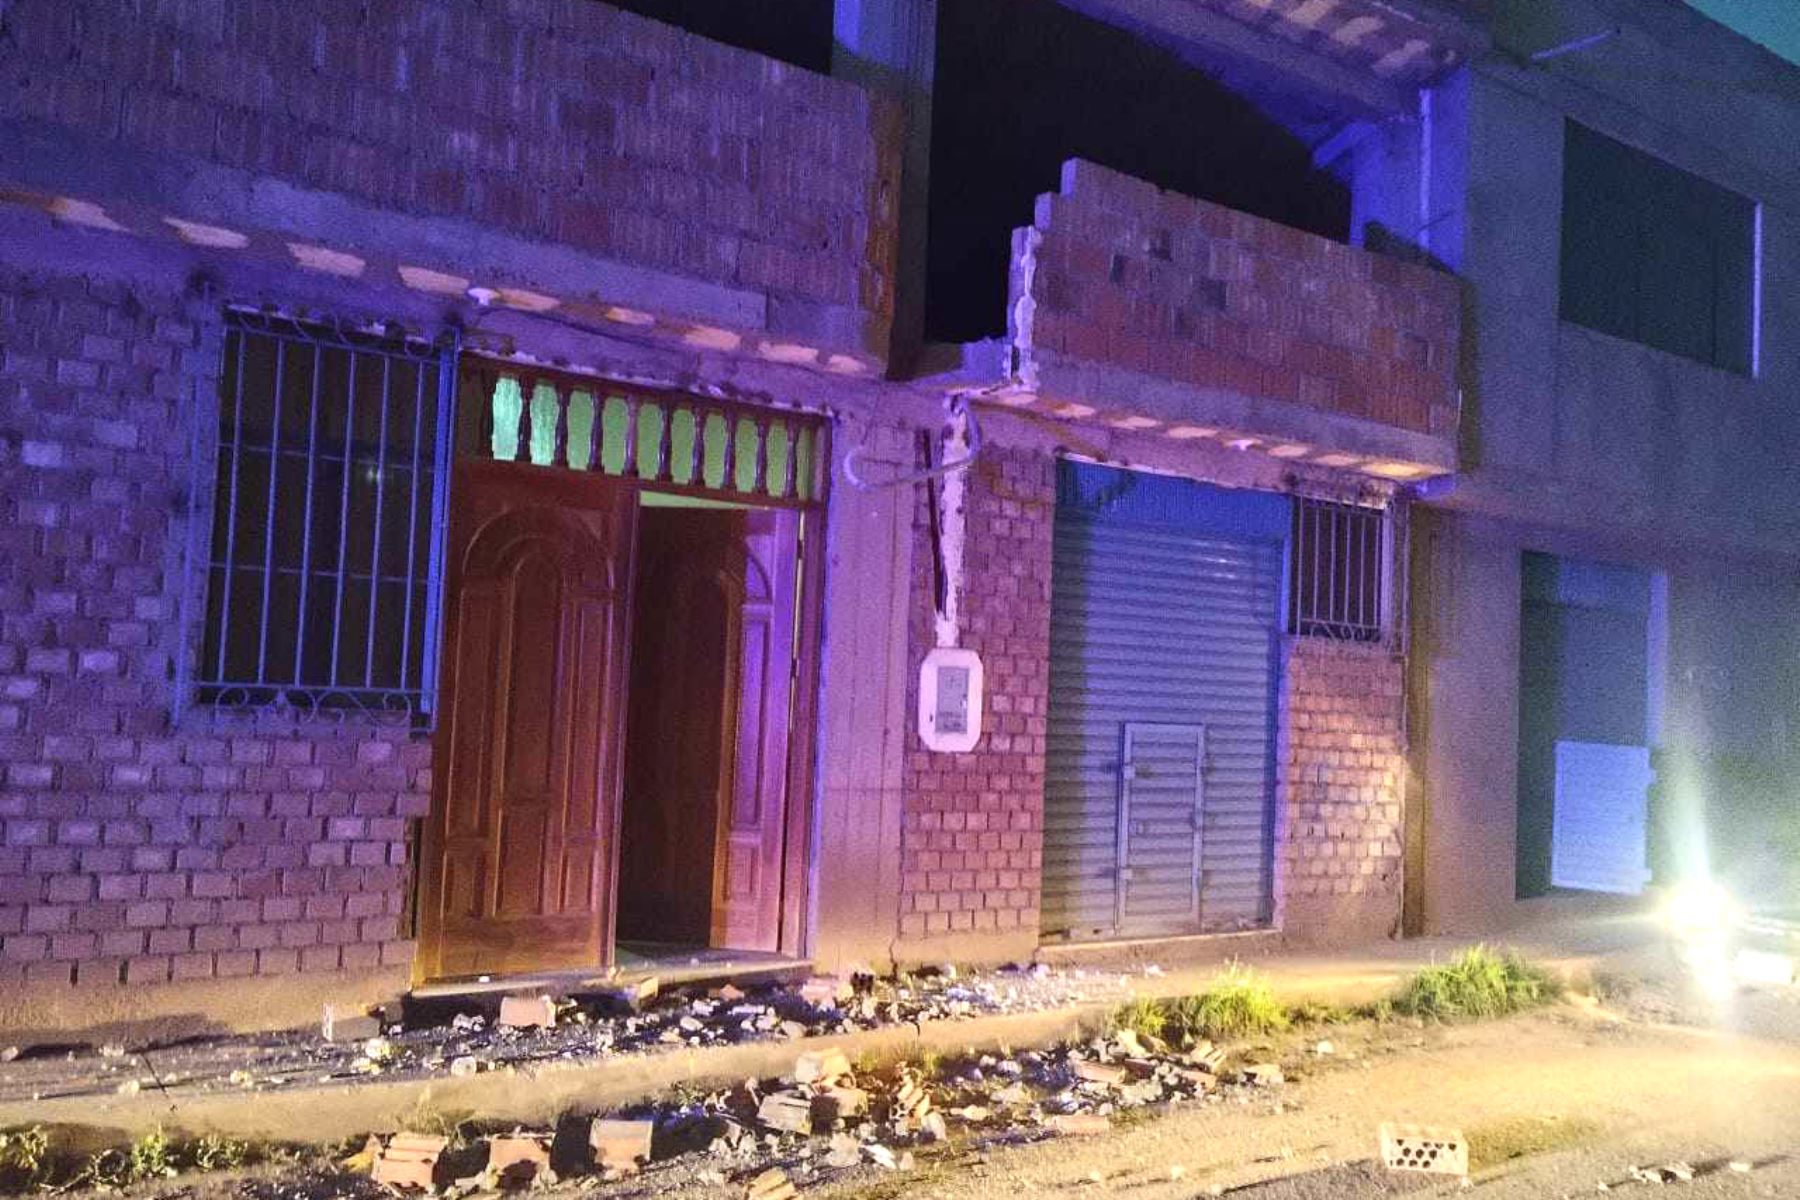 Un temblor de magnitud 4.4, con una profundidad de 10 kilómetros, se registró esta madrugada en la región Cusco, causando alarma a la población de la provincia de Quispicanchi, informó el Centro Sismológico Nacional del Instituto Geofísico del Perú (IGP).